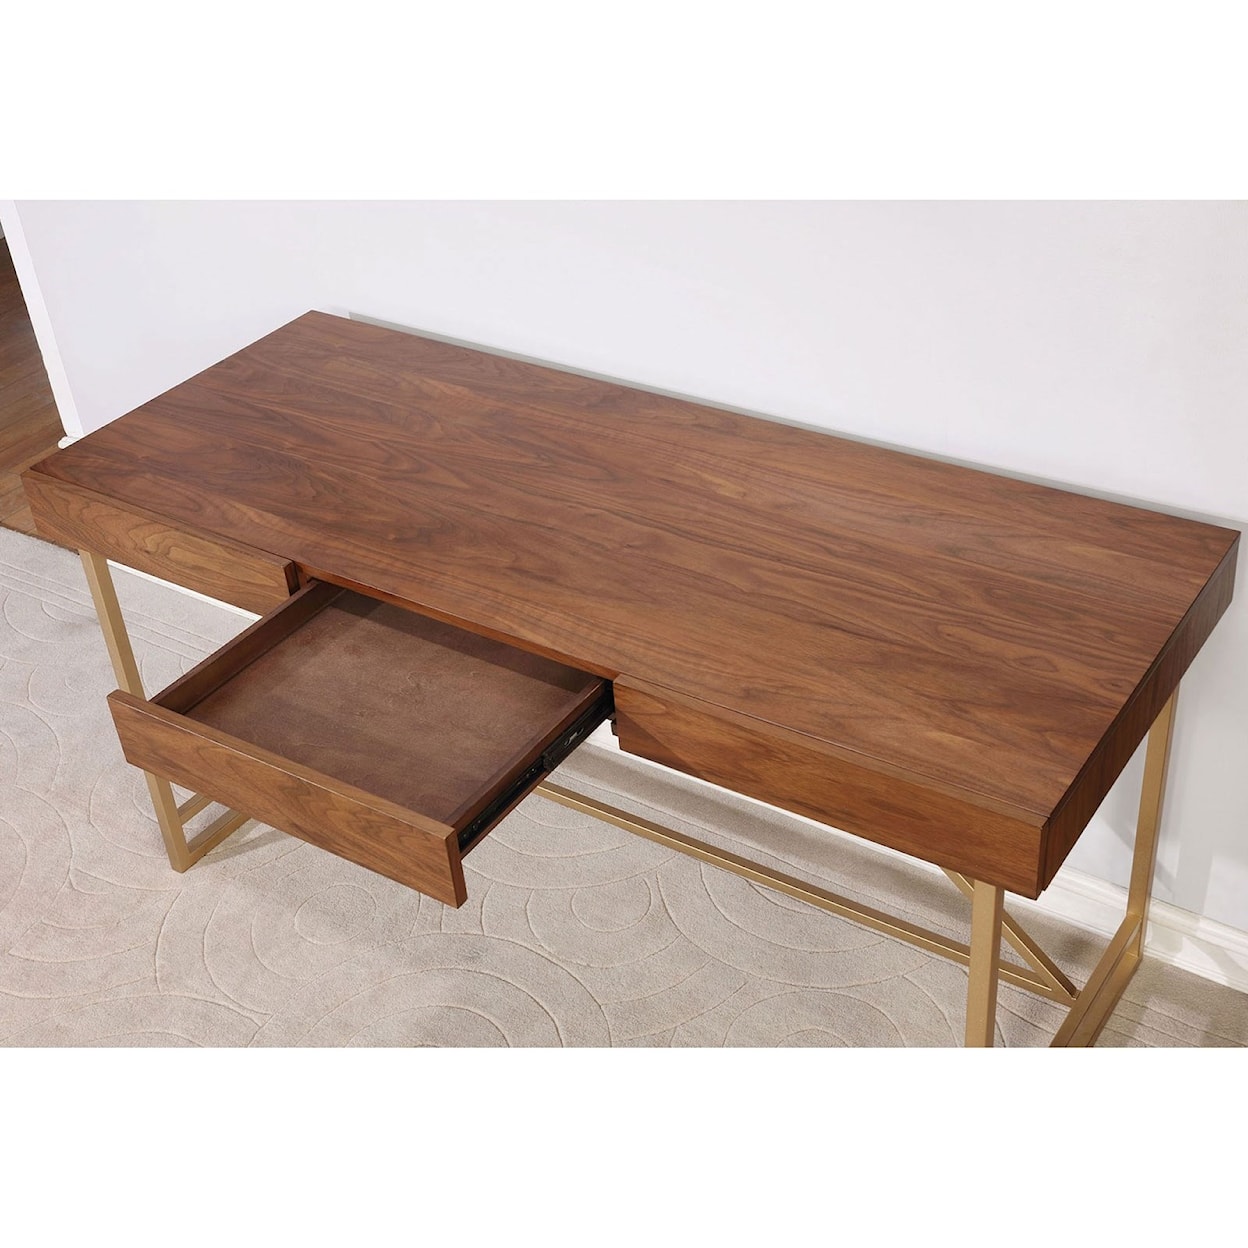 Furniture of America Halstein Desk